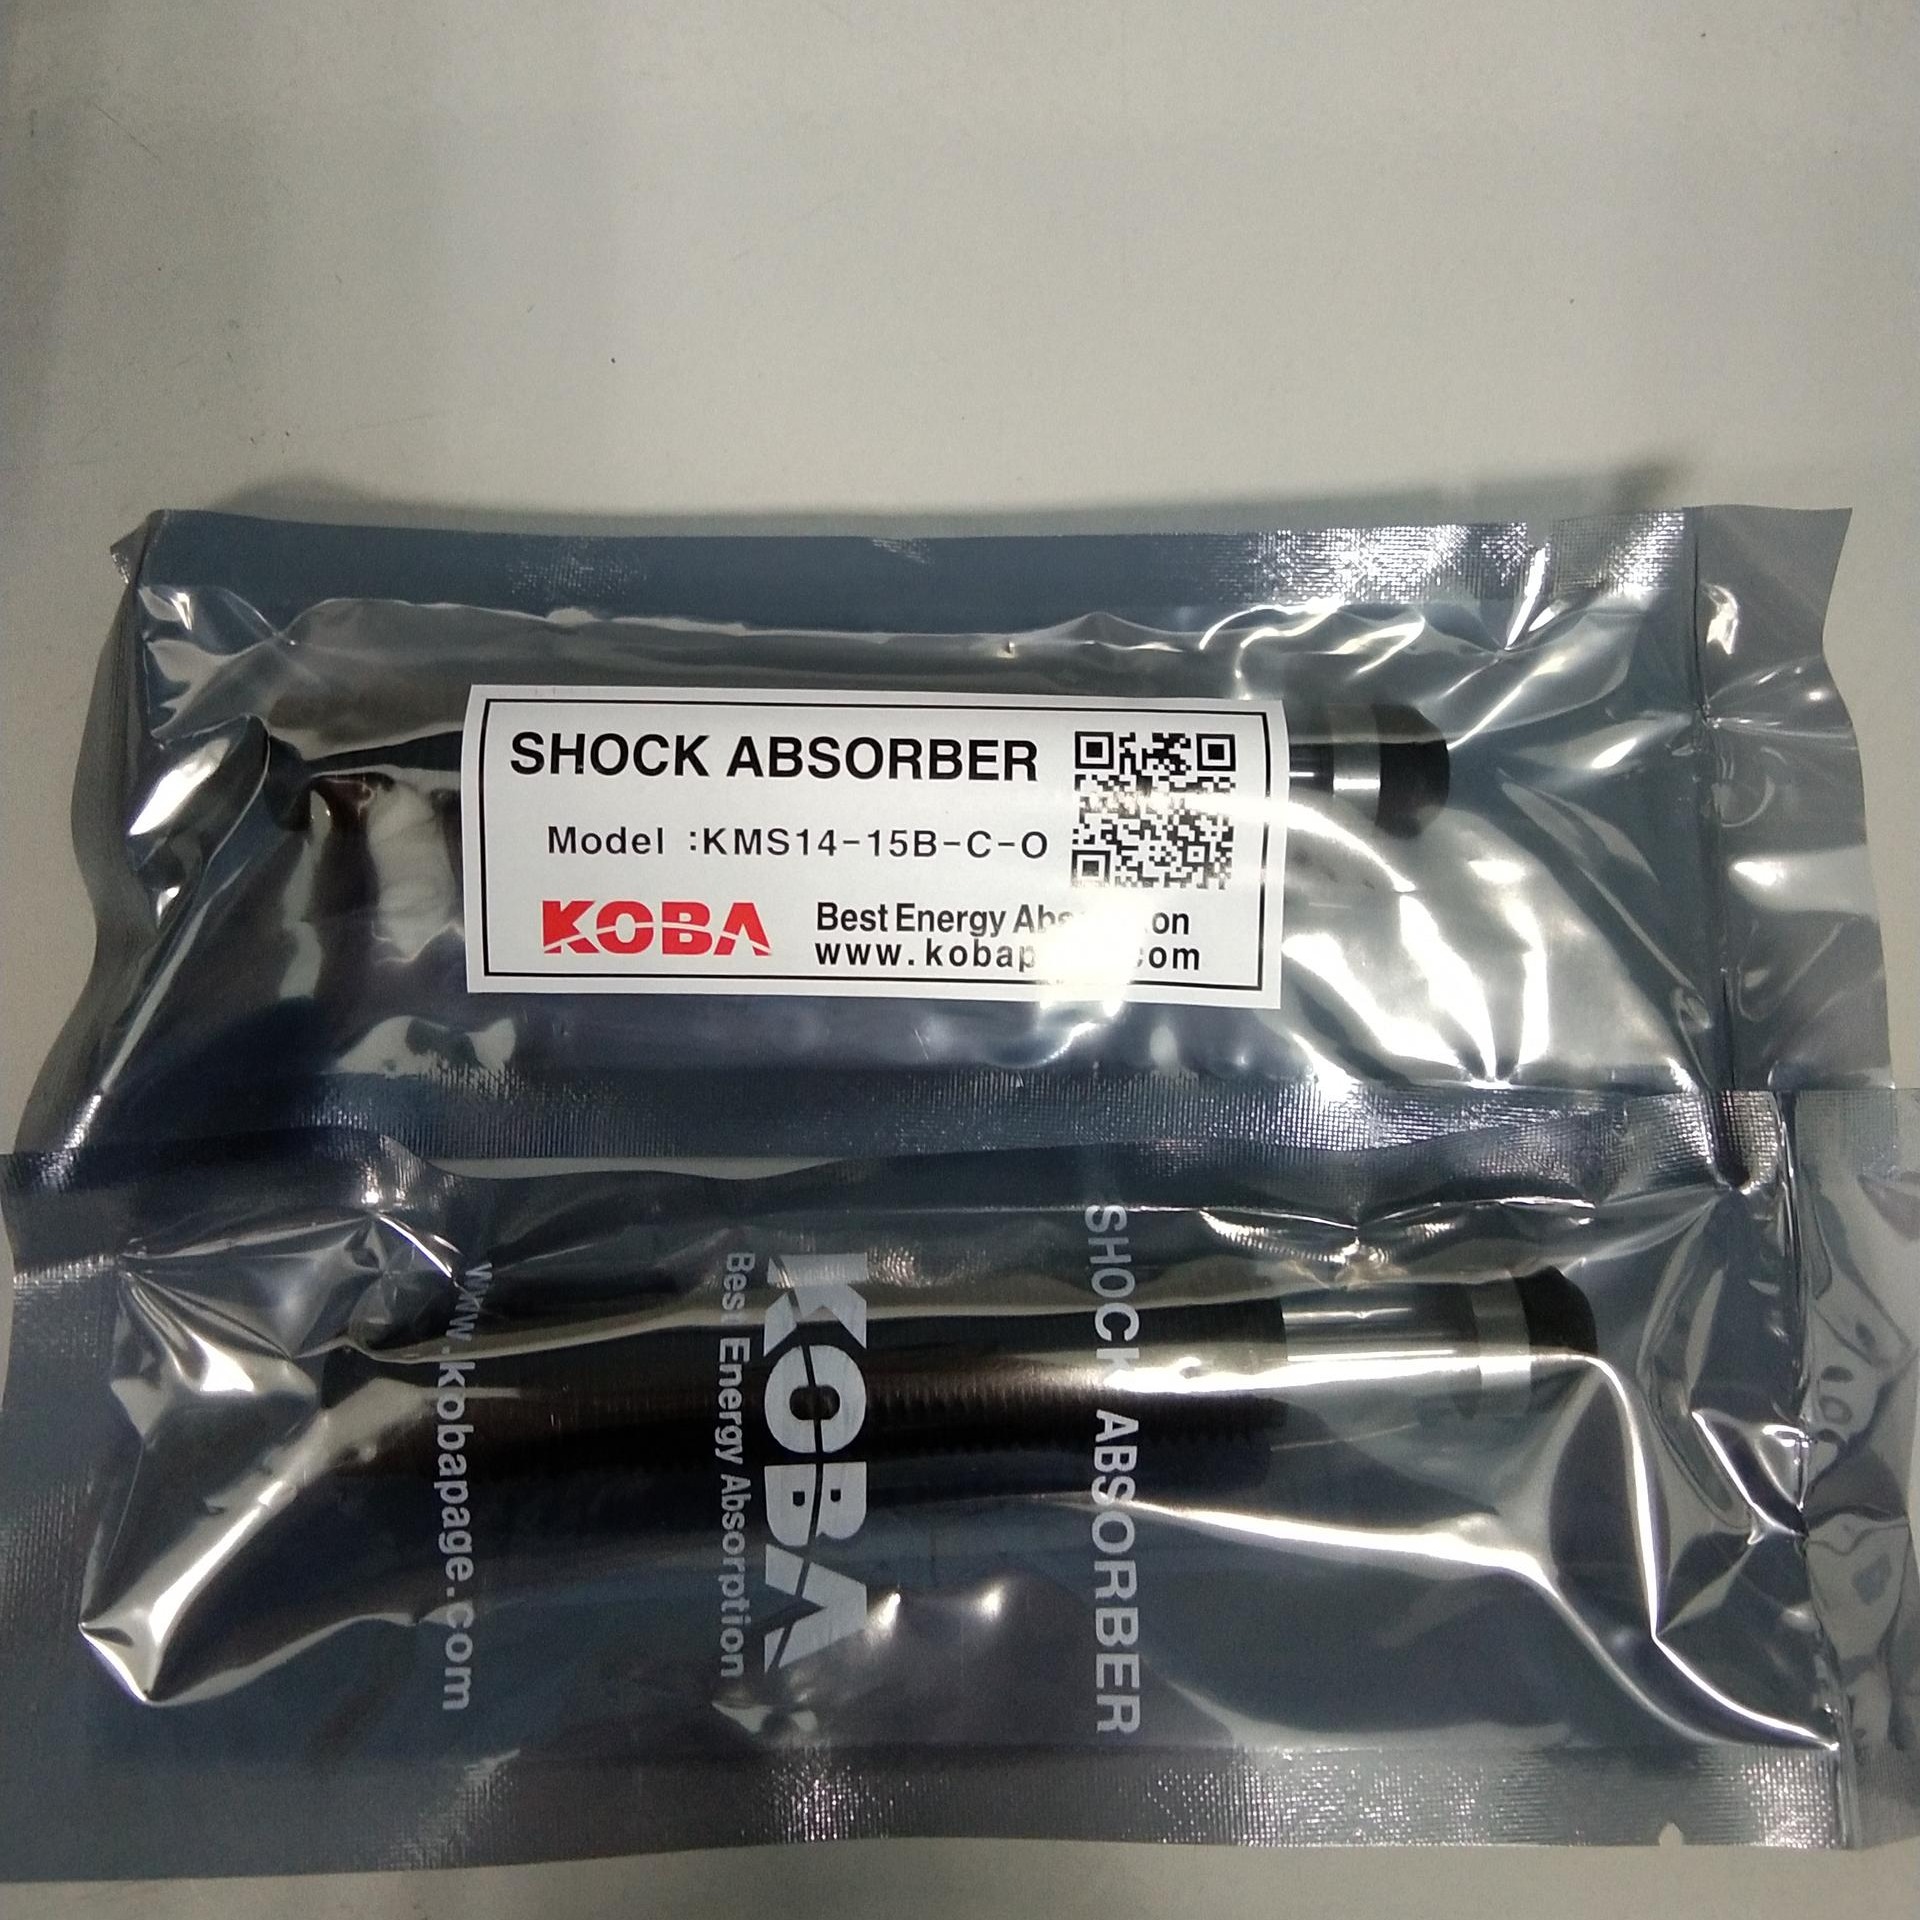 韩国KOBA缓冲器 KMS14-15B-C-O  韩国kMA液压阻尼缓冲器  shock absorber 原装图片